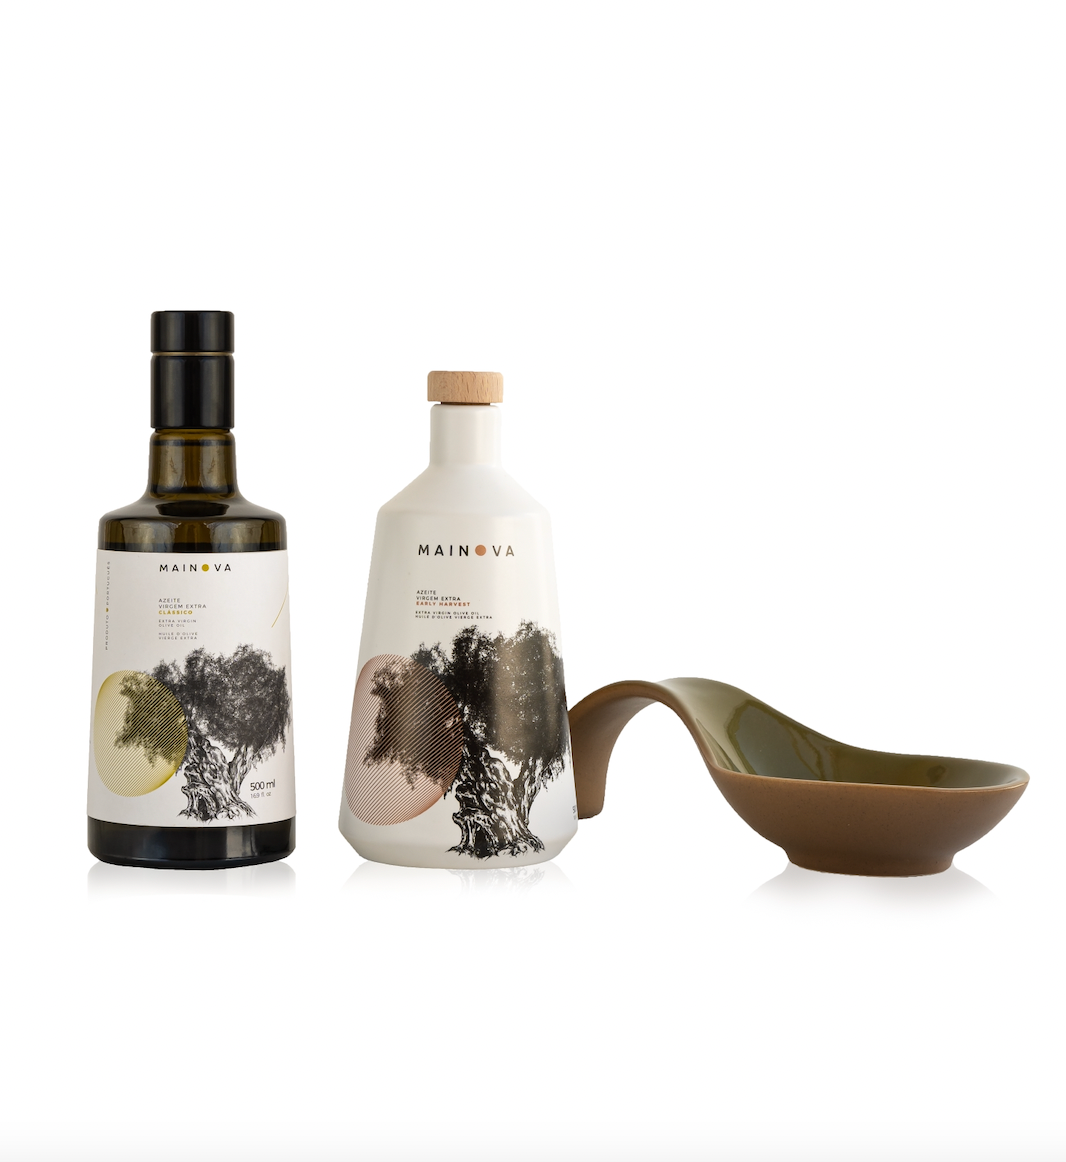 NEW Mainova Olive Oil Set//Gift Set